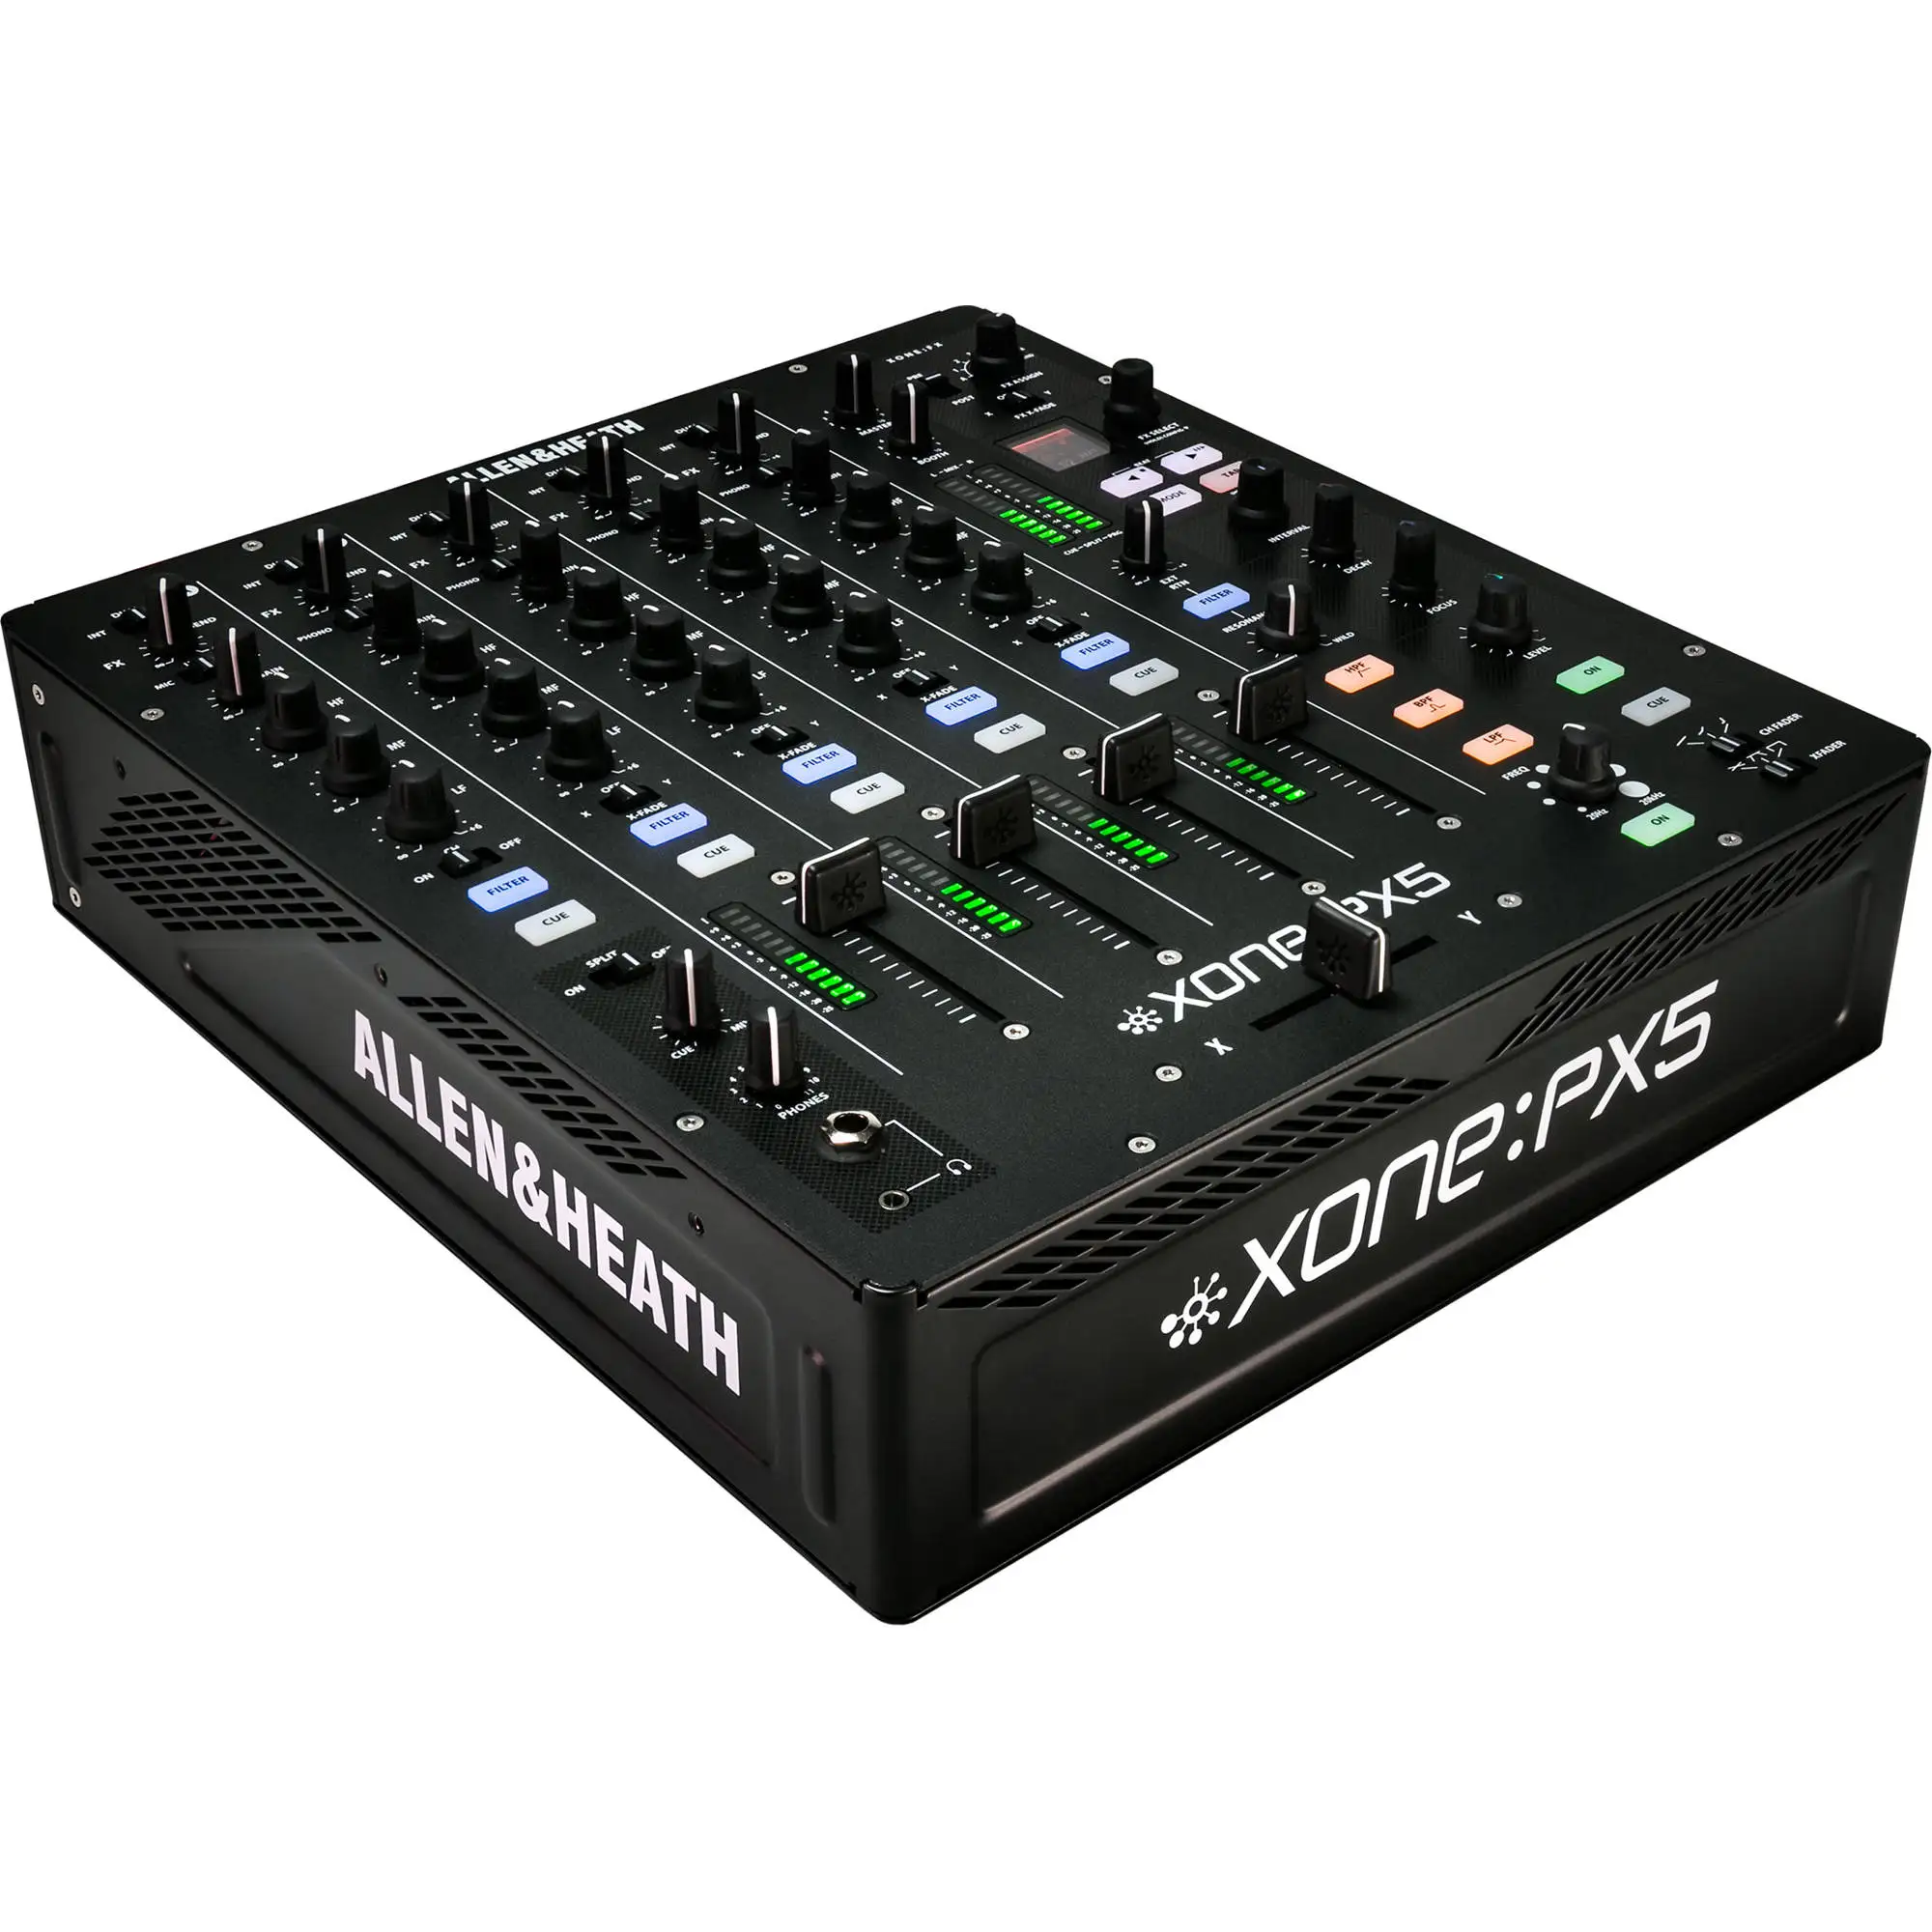 

100% SUMMER DISCOUNT SALES ON Allen & Heath Xone:PX5 4+1 DJ Mixer with Soundcard